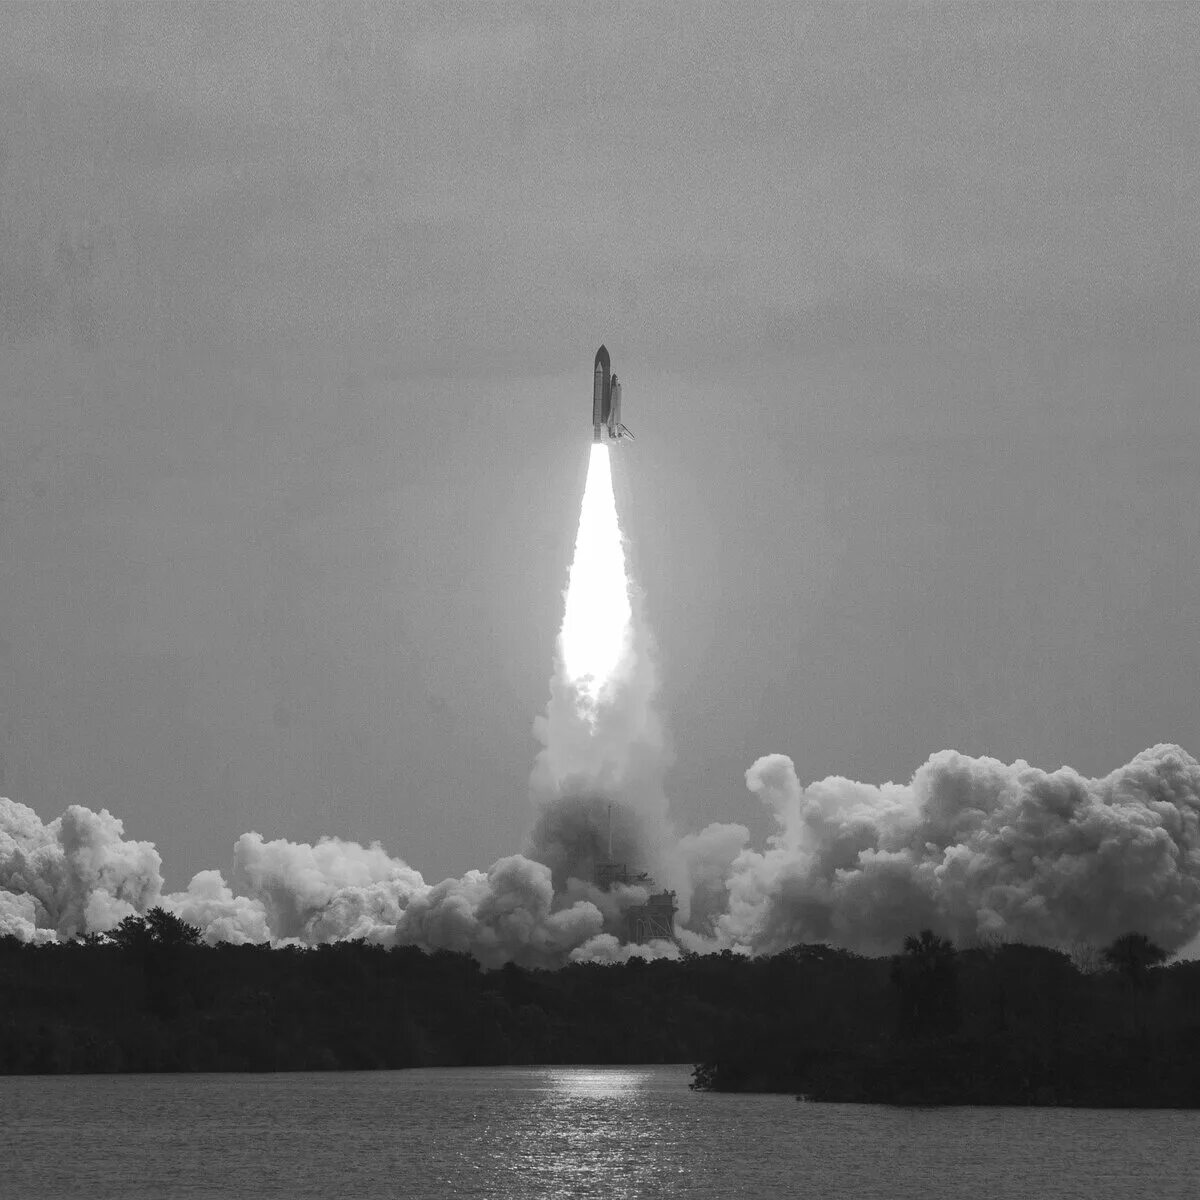 Песня раз ракета два ракета. Ракета Юрия Гагарина Восток-1. Ракета с запуском. Ракета старт. Ракета взлетает.